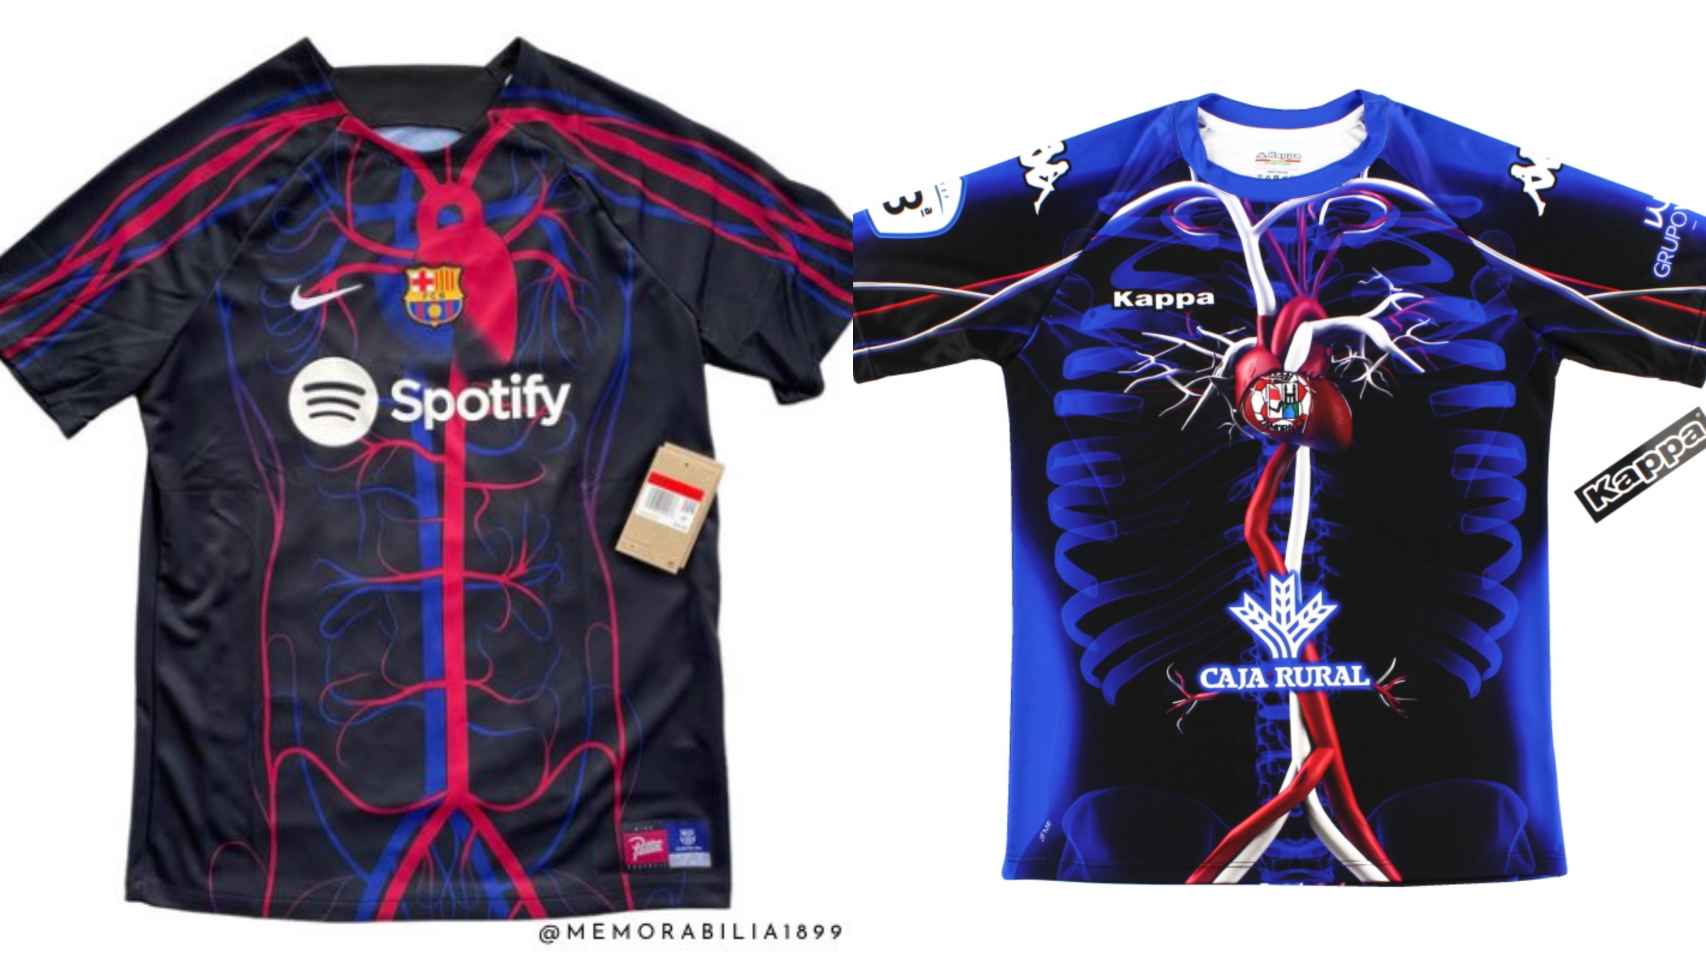 Collage entre la nueva camiseta del CF Barcelona y el diseño de 2018 del Zamora CF